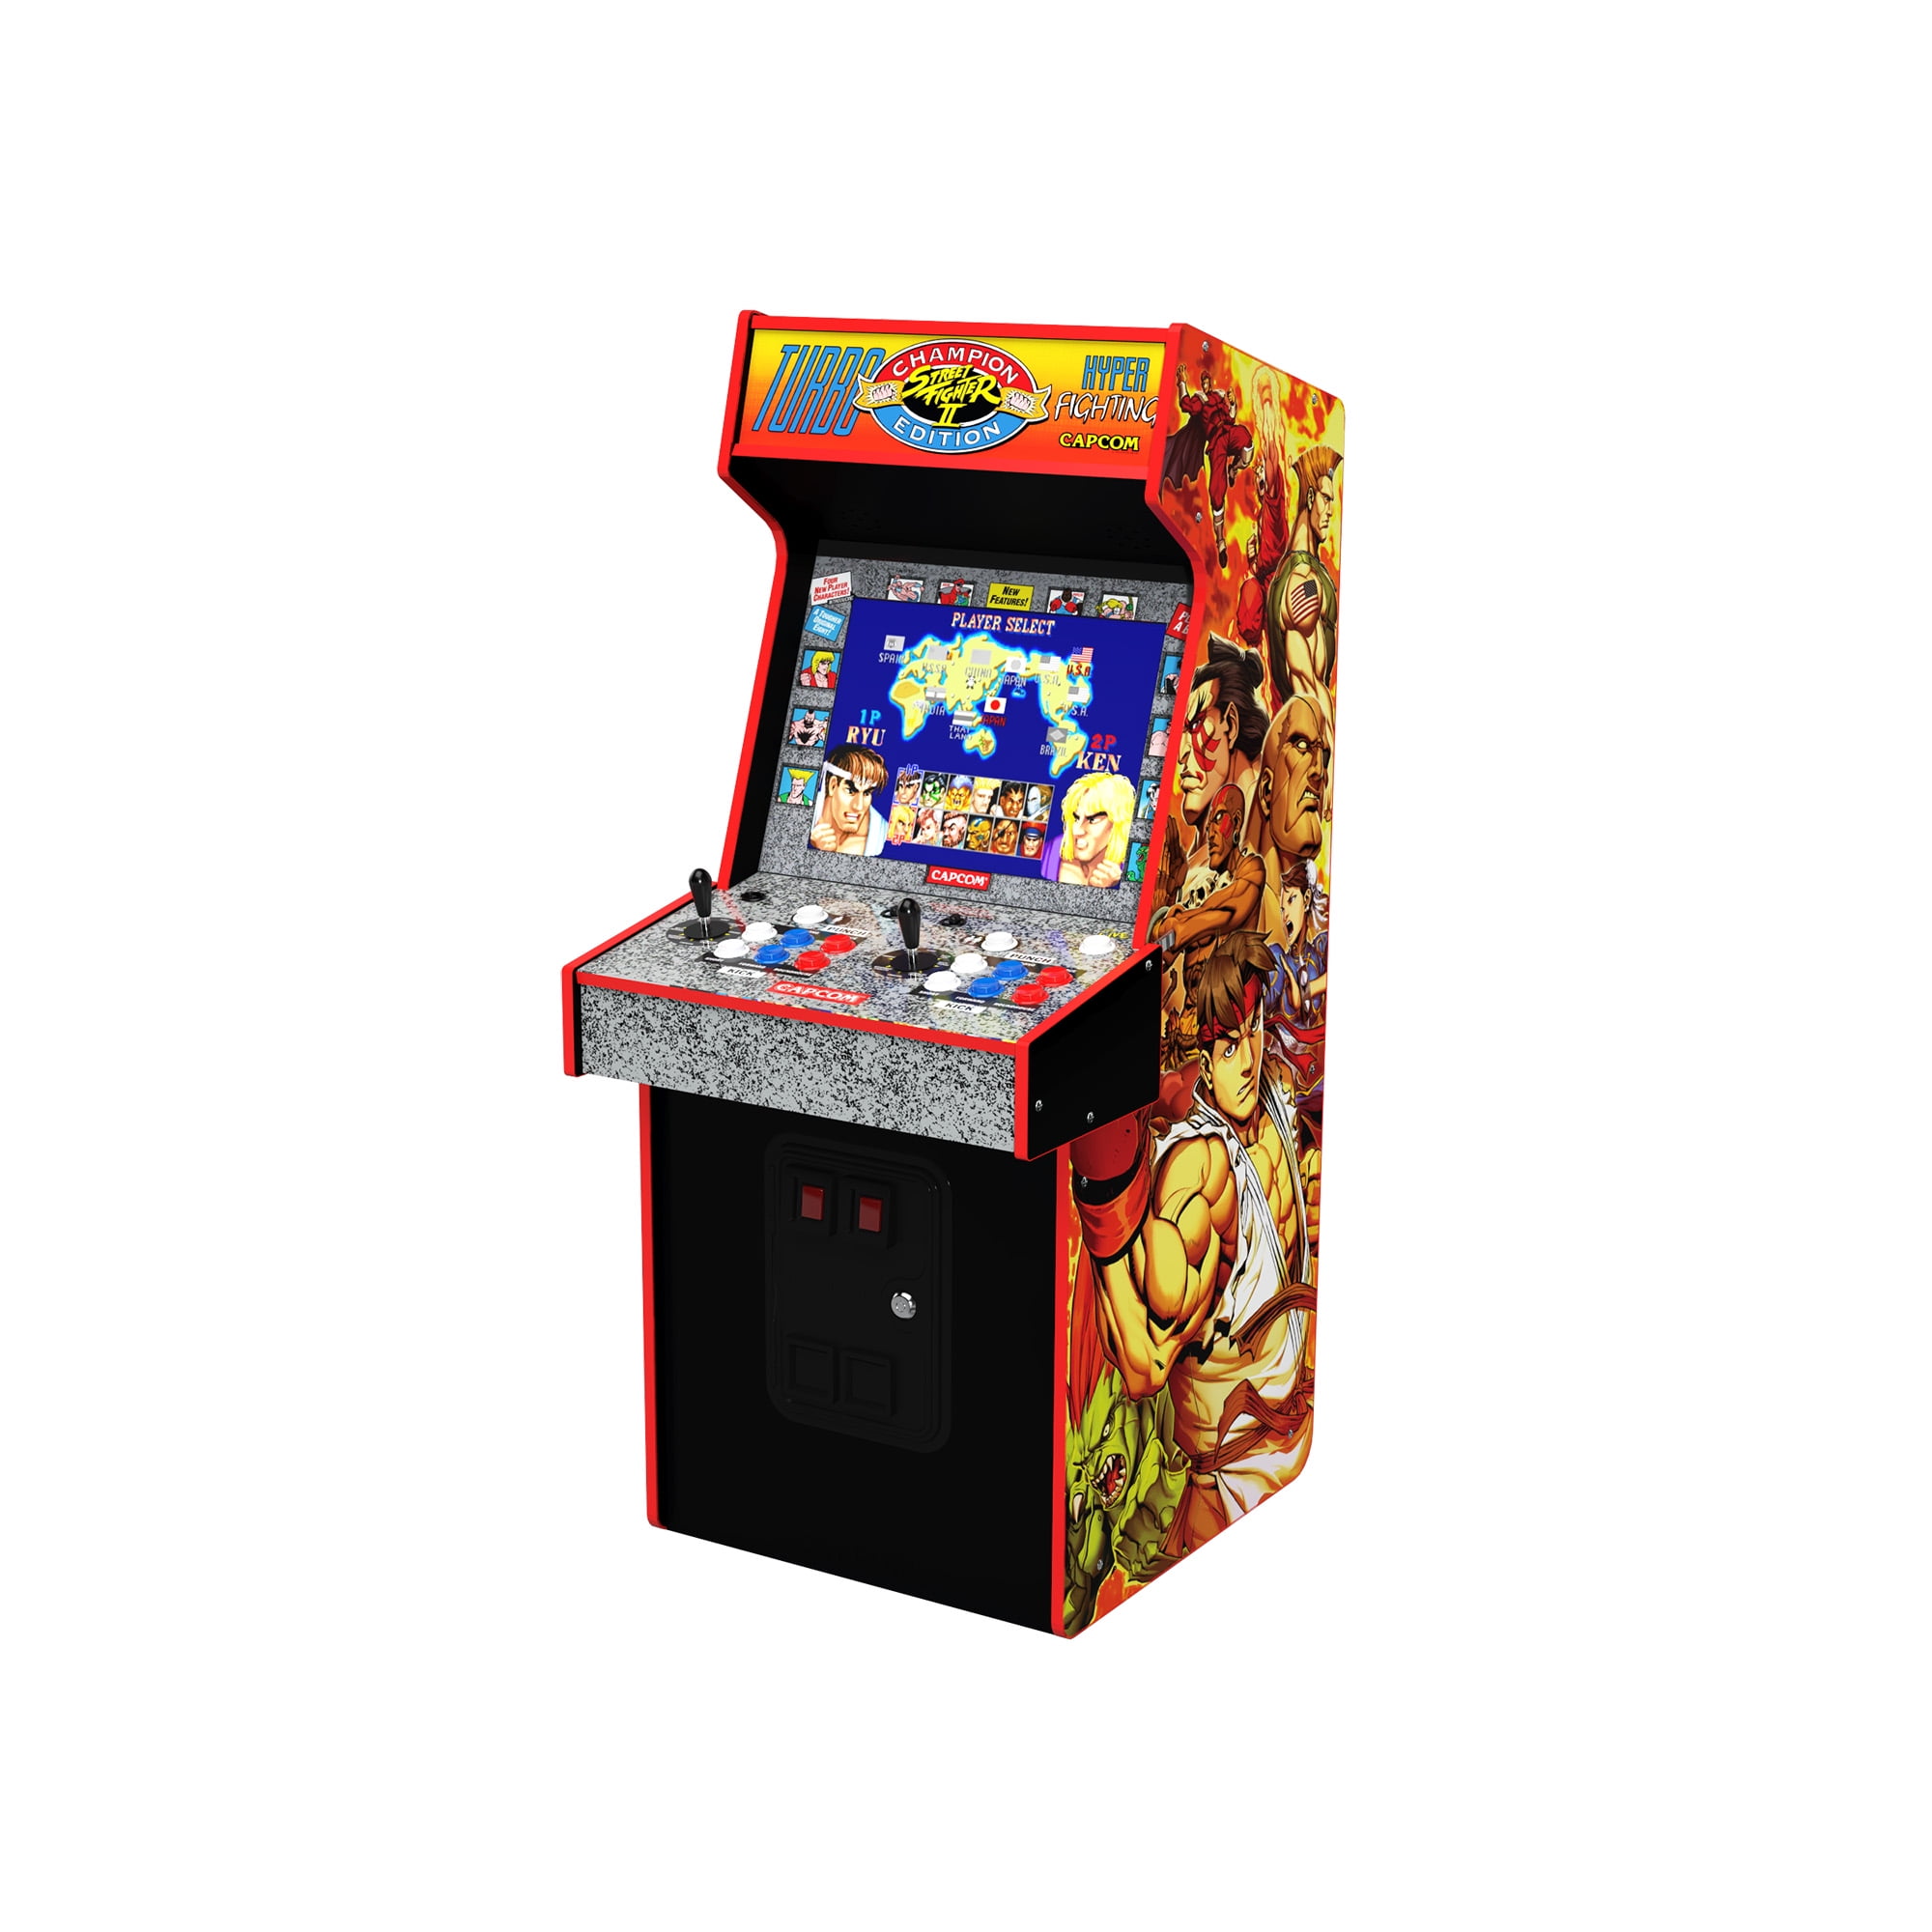 Arcade1up Capcom Legacy Arcade Game